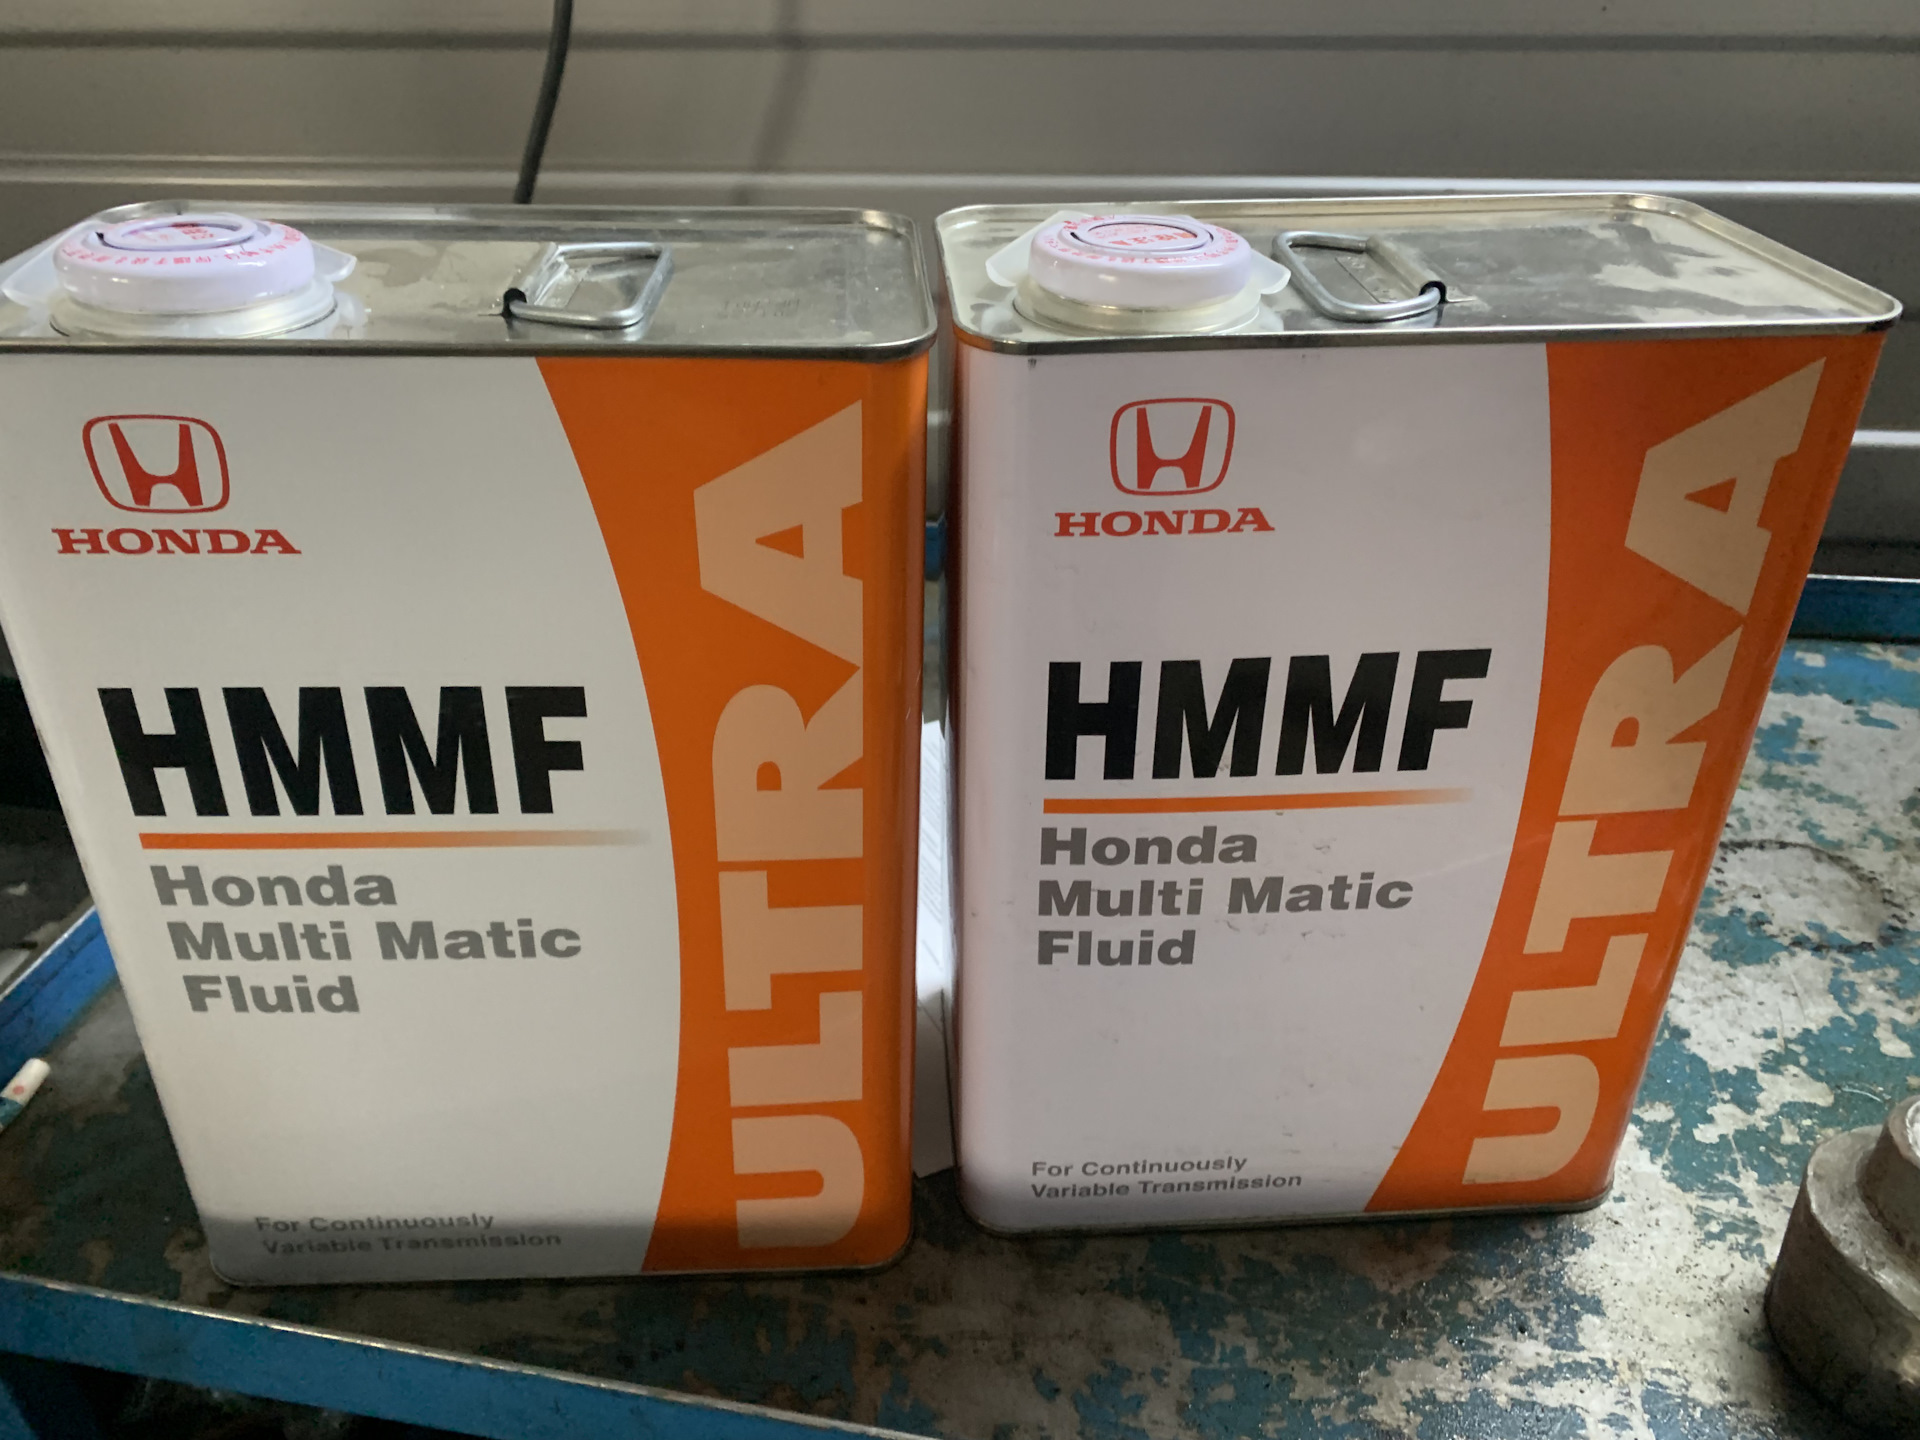 Масло вариатор хонда срв. HMMF вариатора Хонда. ,HMMF для автомата Хонда. Hmwf. Масло с допуском HMMF.